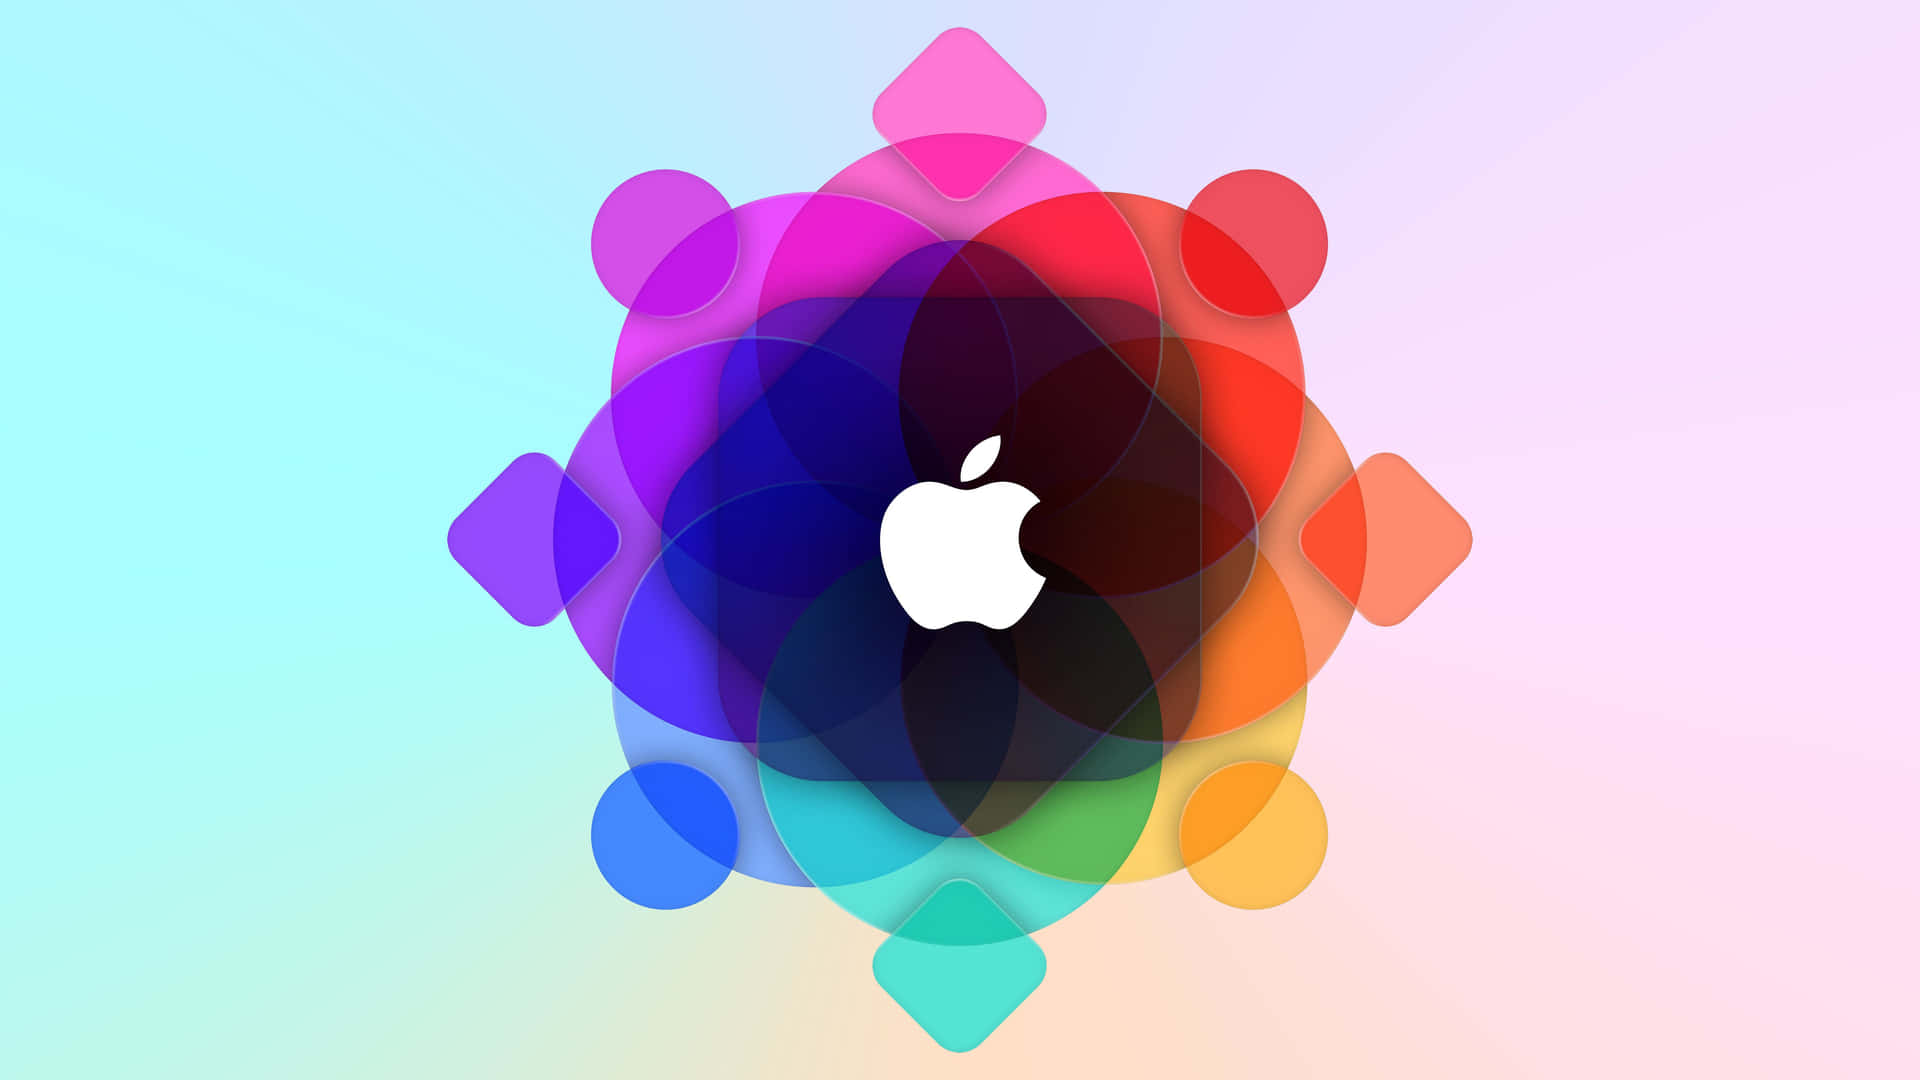 Experimentacolores Vibrantes Y Una Resolución Nítida En Tus Películas Y Programas Favoritos Con Apple 4k. Fondo de pantalla